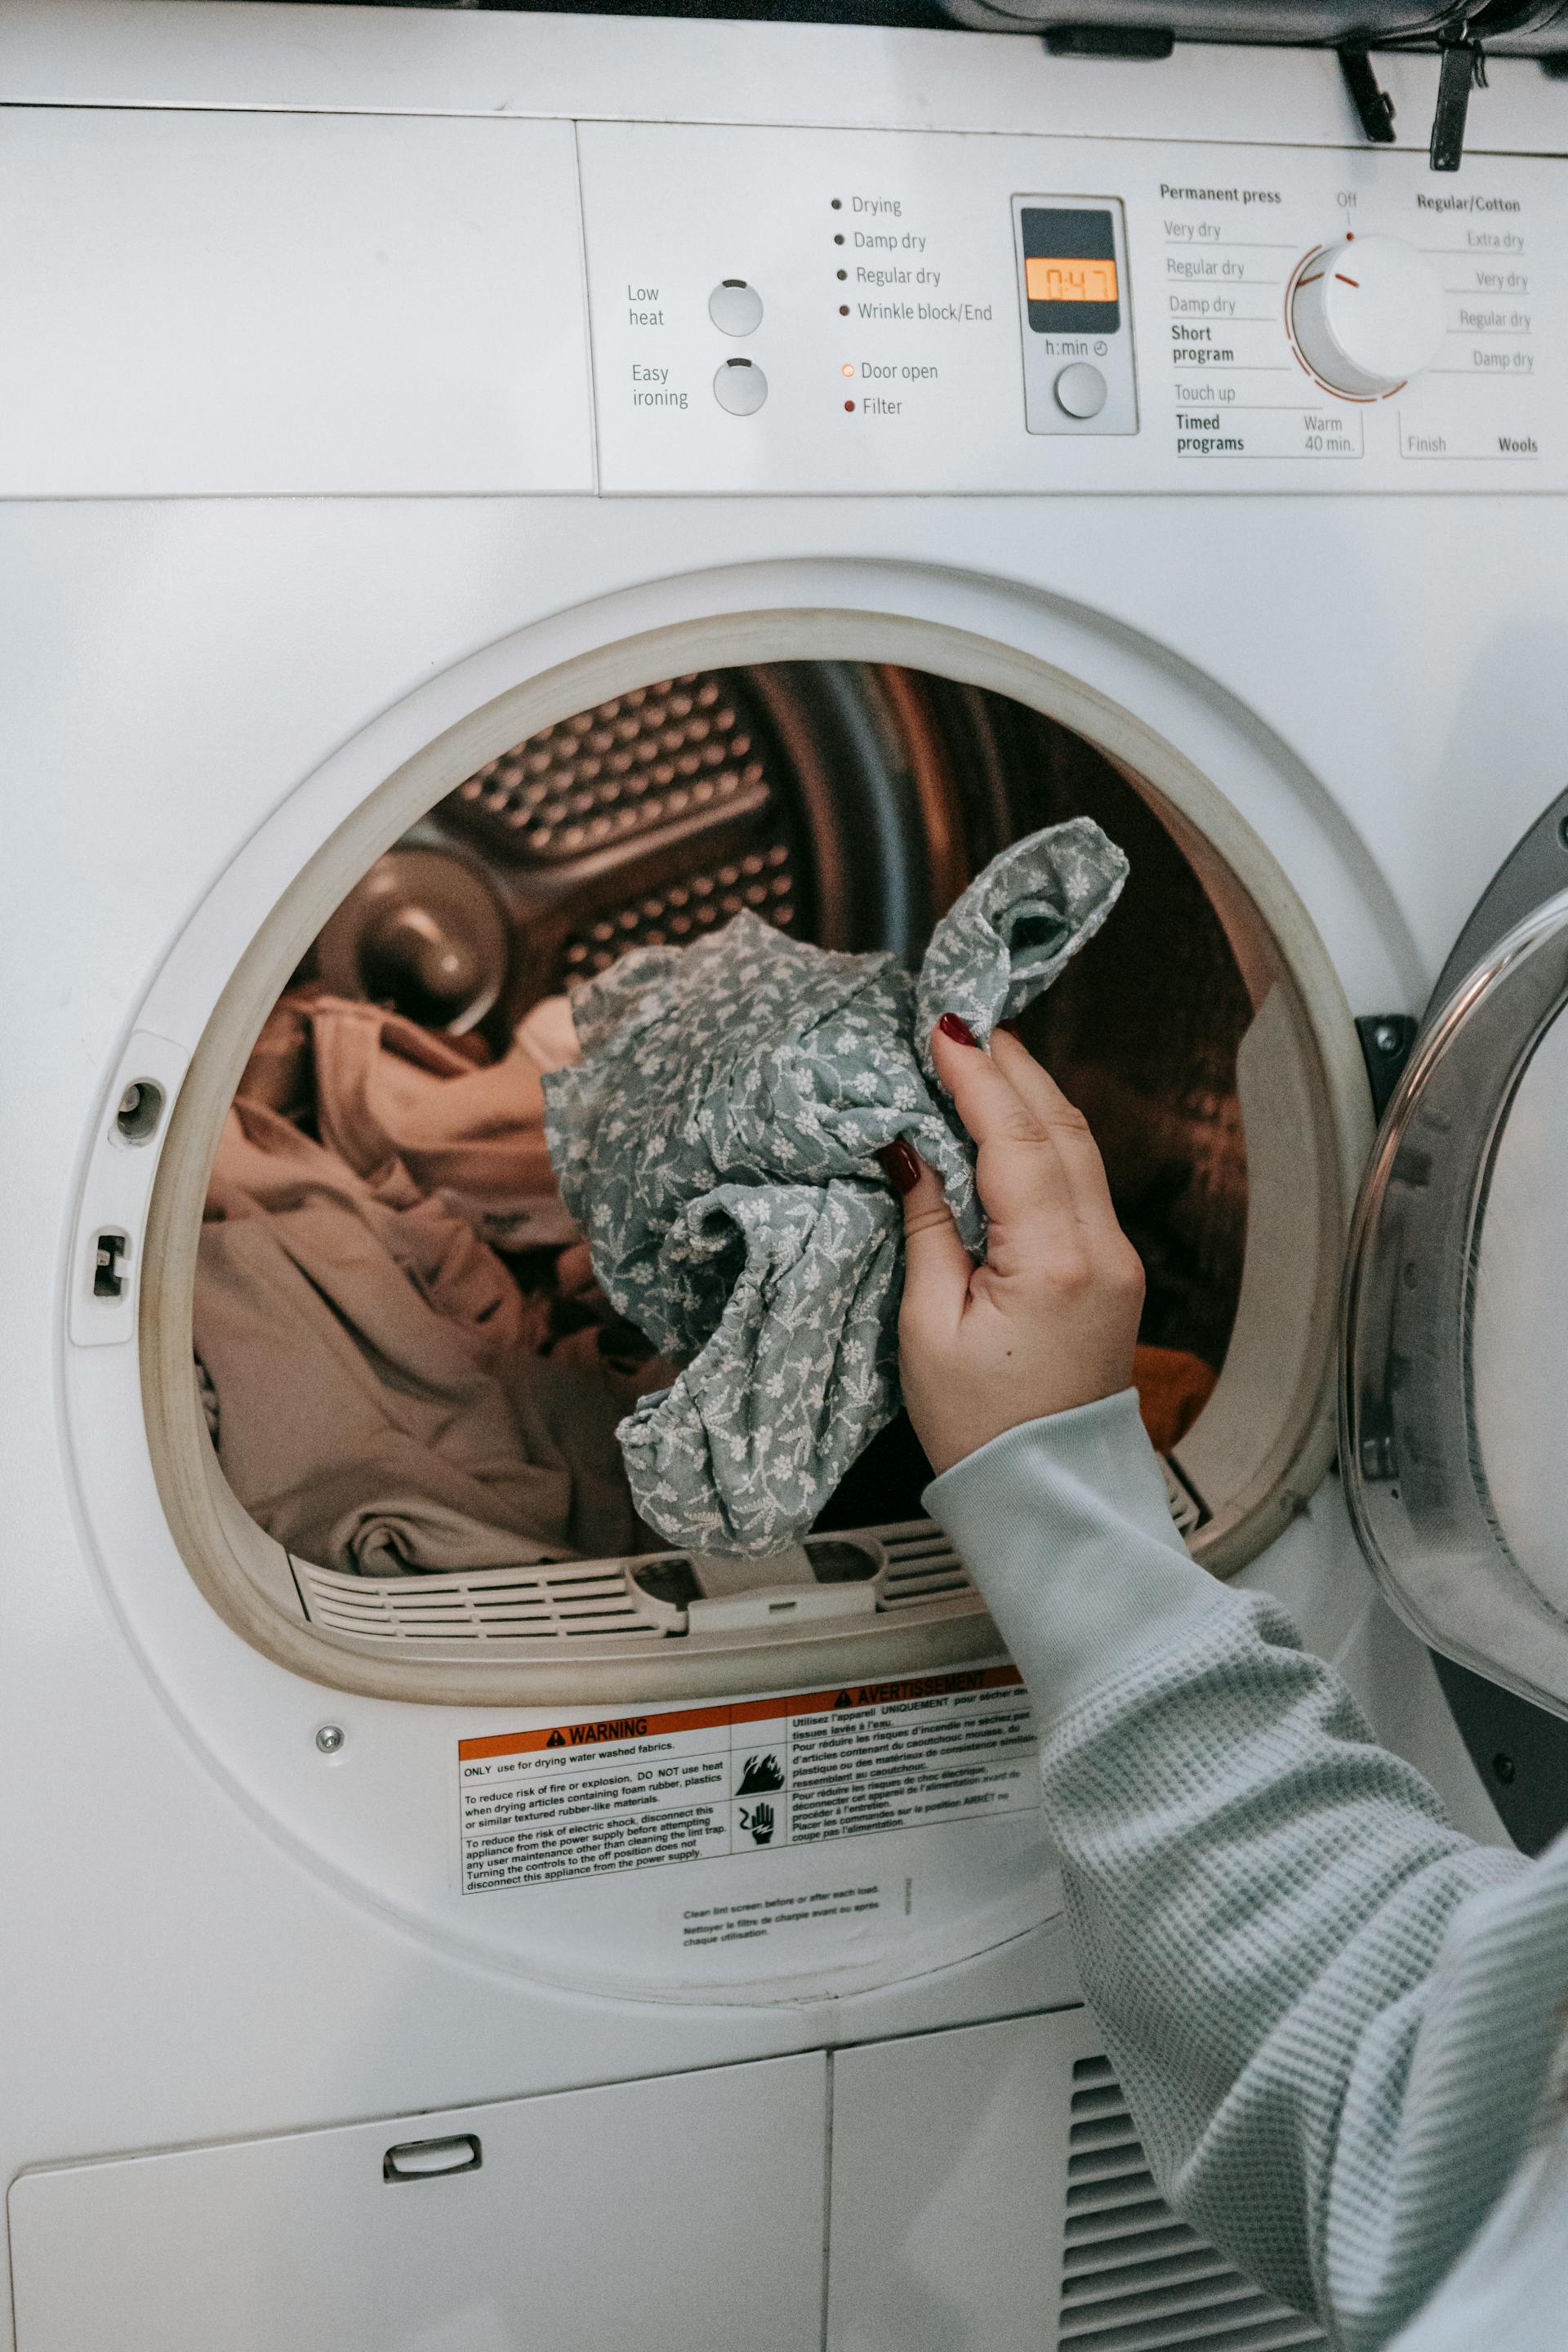 Eine Person beim Wäschewaschen | Quelle: Pexels